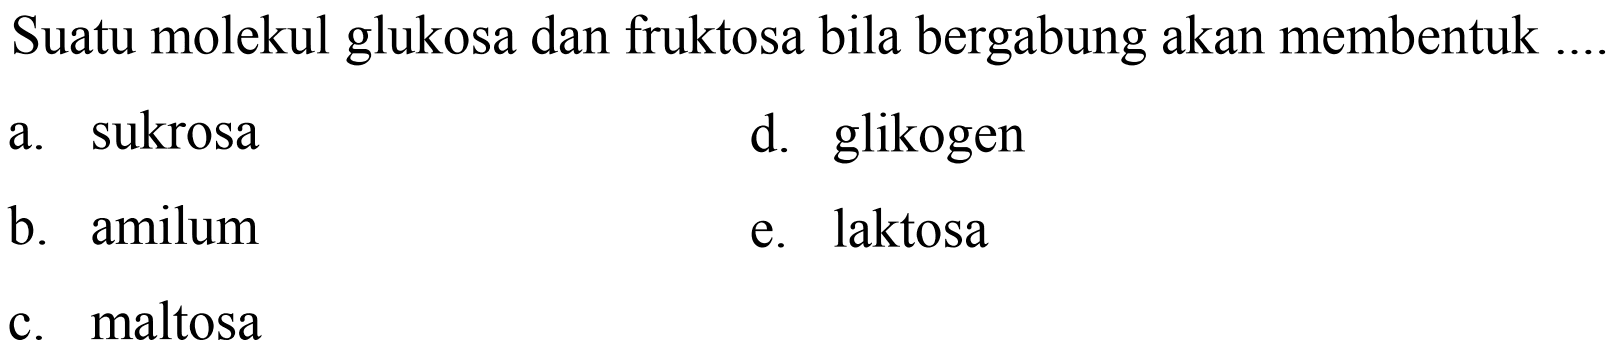 Suatu molekul glukosa dan fruktosa bila bergabung akan membentuk
a. sukrosa
d. glikogen
b. amilum
e. laktosa
c. maltosa